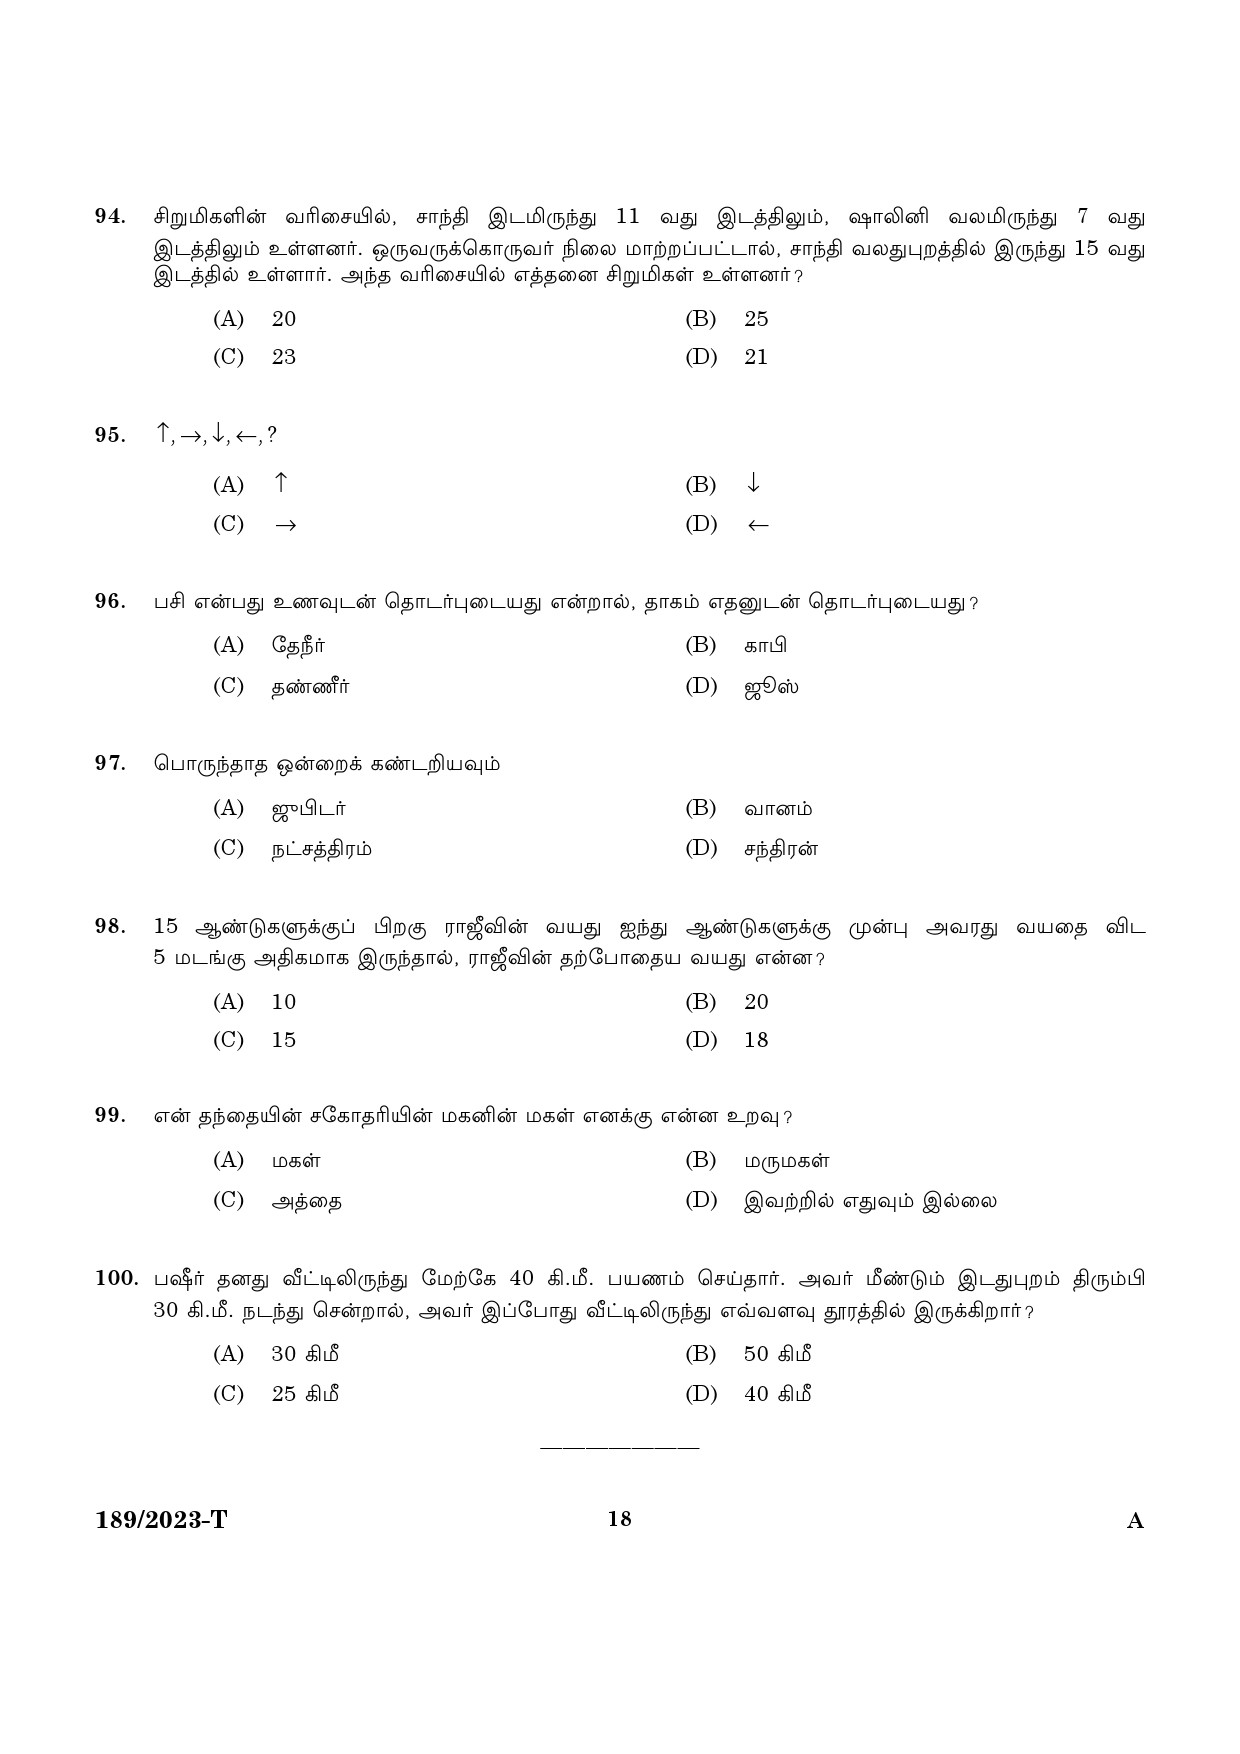 KPSC LGS Tamil Exam 2023 Code 1892023 T 16